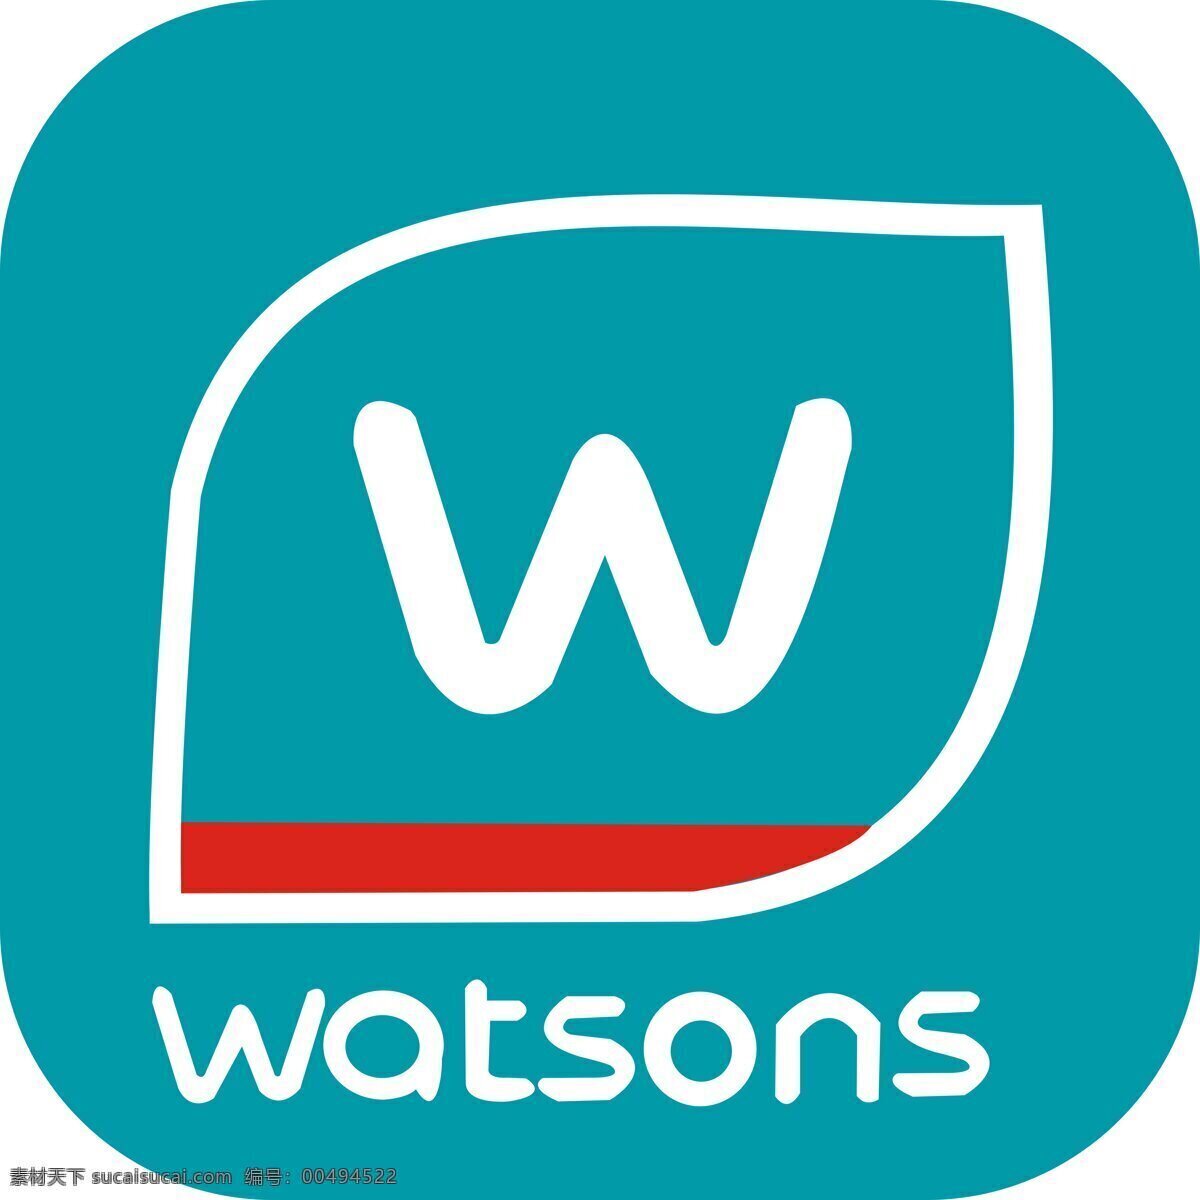 屈臣氏标志 watsons 标志 logo